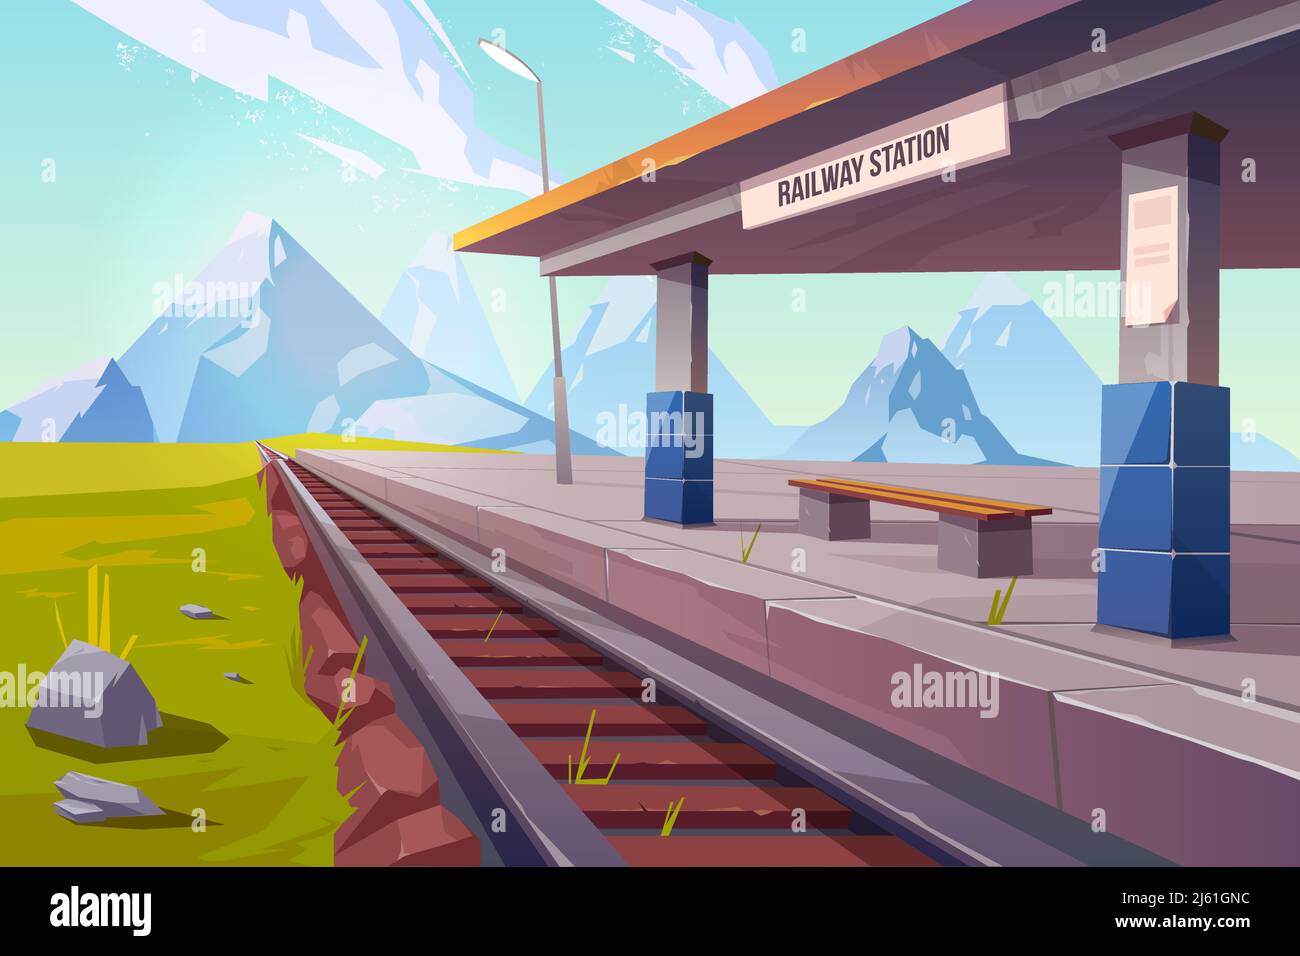 Bahnhof in den Bergen, leerer Bahnsteig für Zug im Hochland Landgebiet Perspektivansicht, schöne Naturlandschaft Hintergrund, Stock Vektor